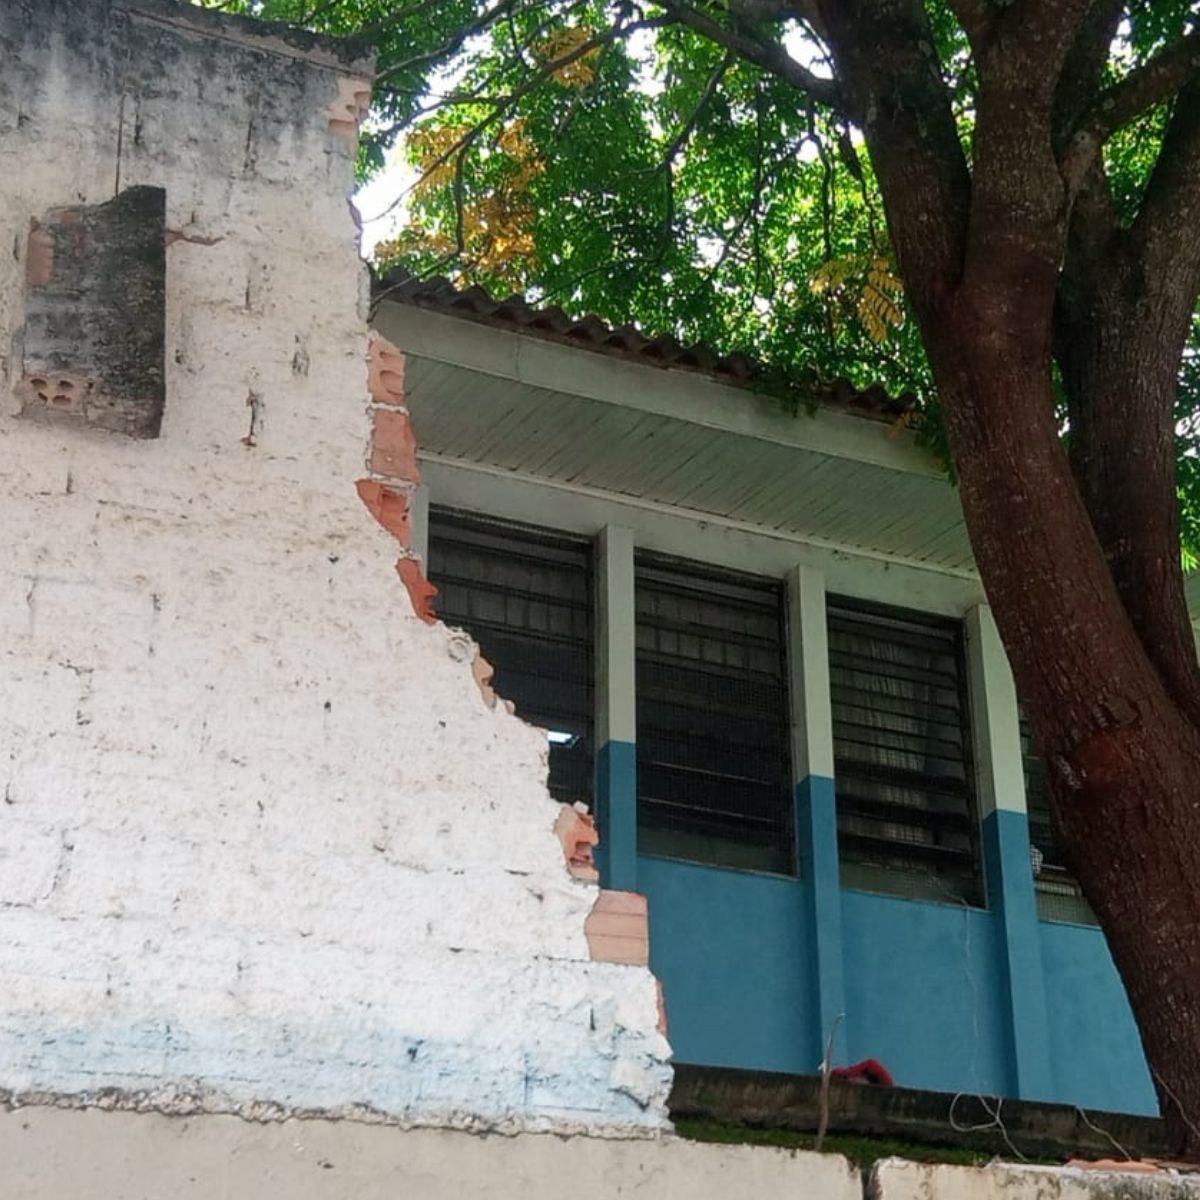  Muro de escola no Pilarzinho desaba 